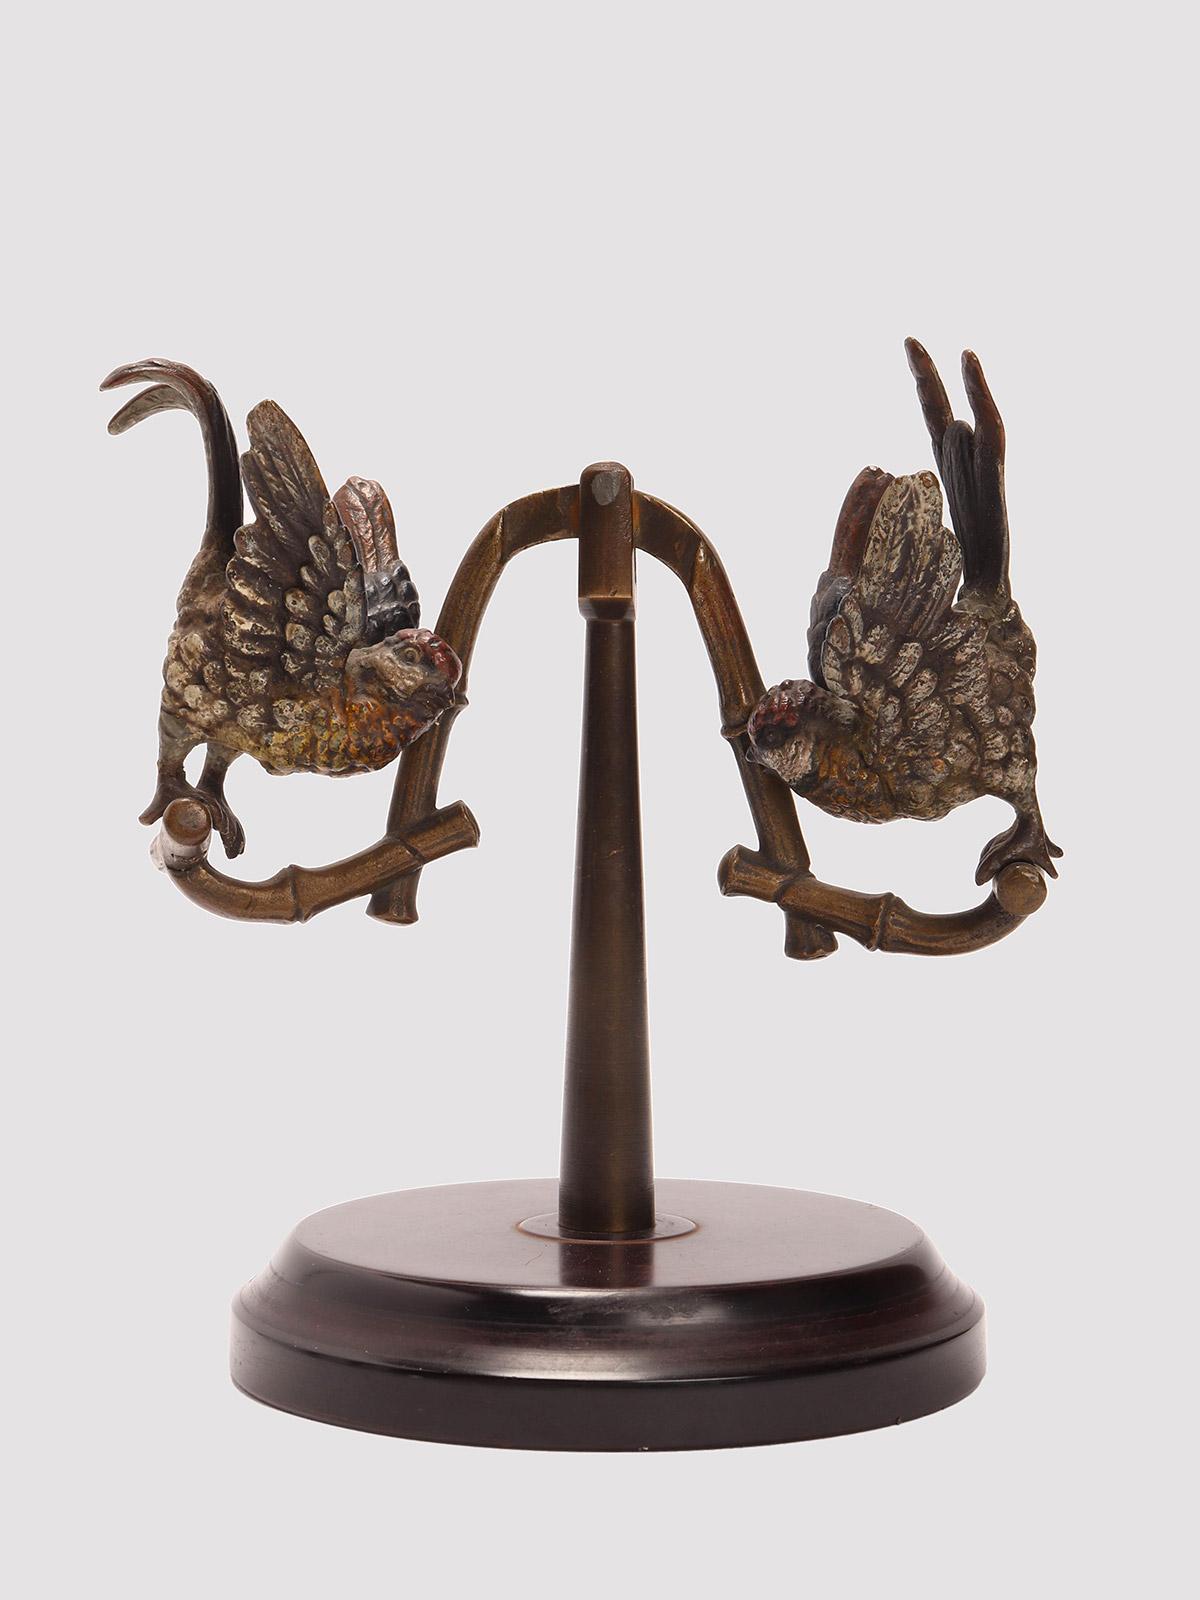 Sculpture en bronze de Vienne représentant une balançoire avec deux perroquets, montée sur une base circulaire en galalithe. Les deux perroquets sont peints en différentes couleurs. Mouvement de travail. Vienne, Autriche, vers 1890.